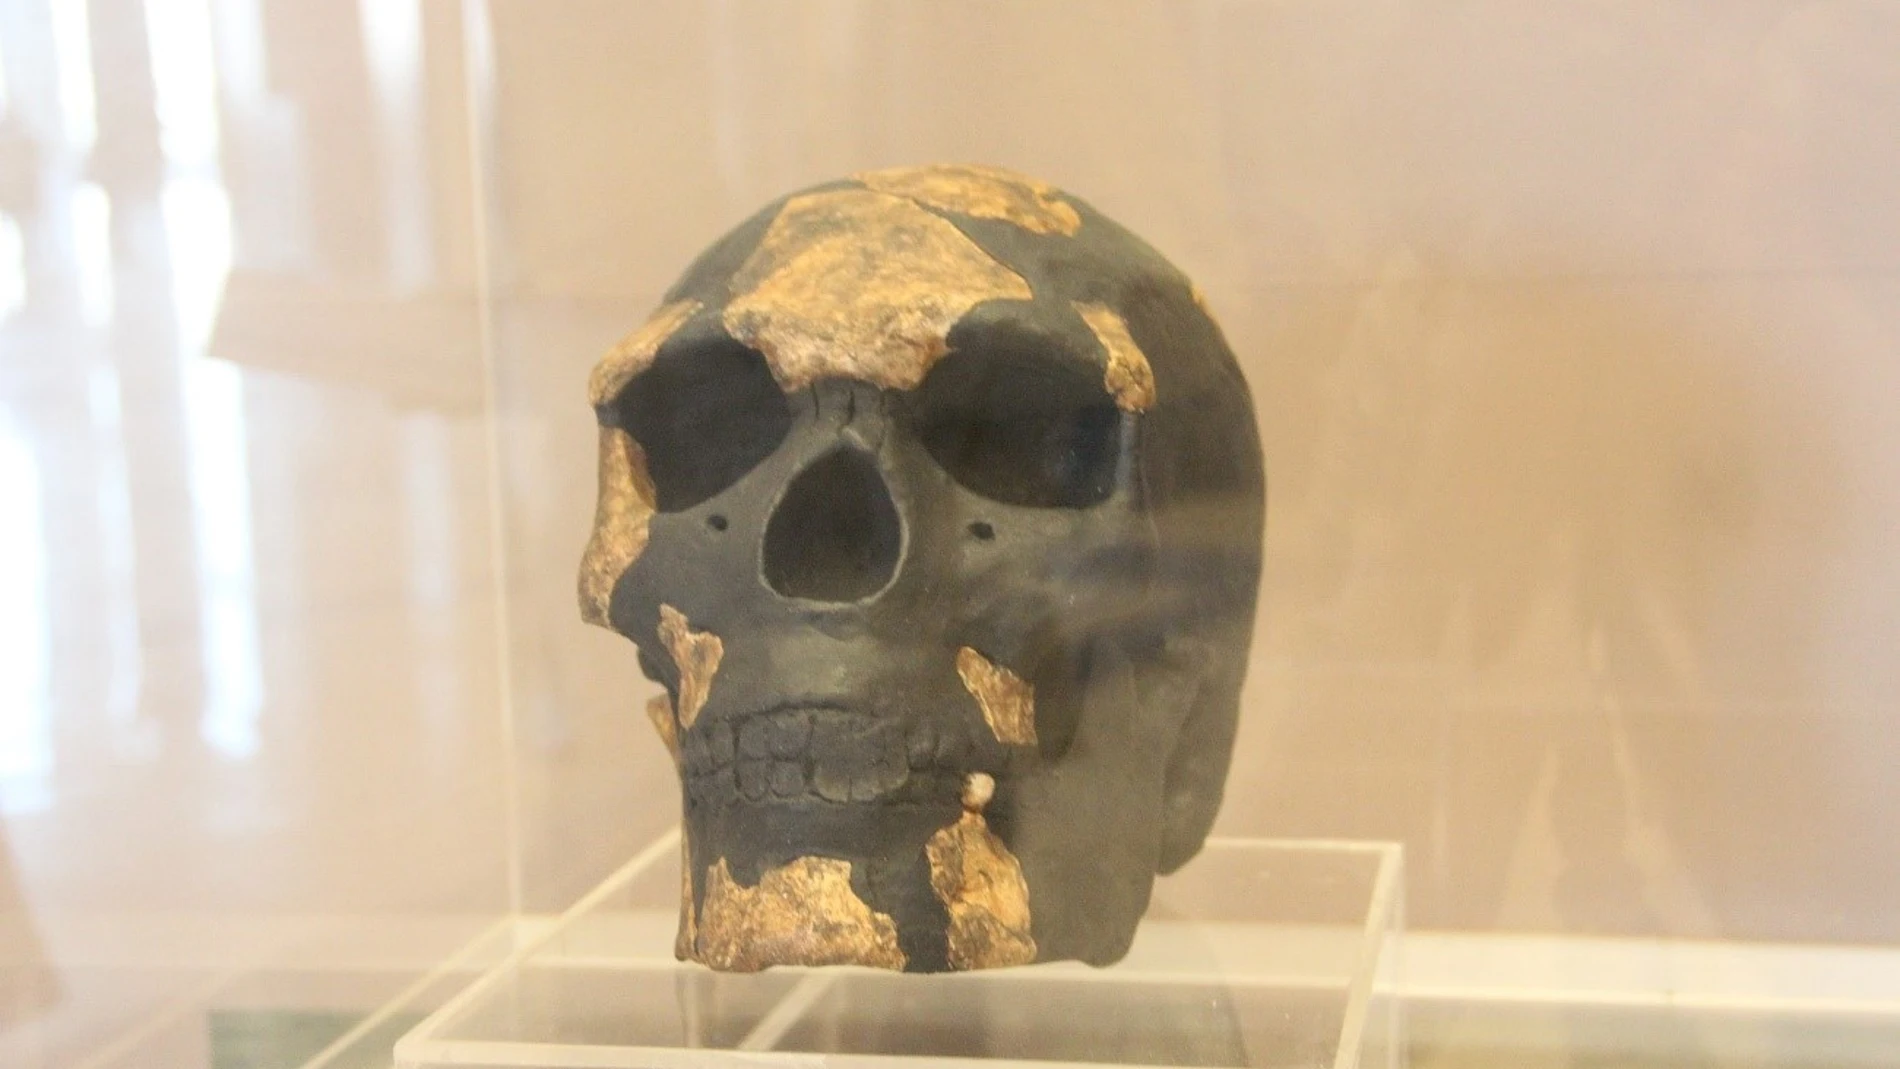 Reproducción del cráneo del Hombre de Kibish (Omo I). “Musée des Civilisations Noires” en Dakar (Senegal).